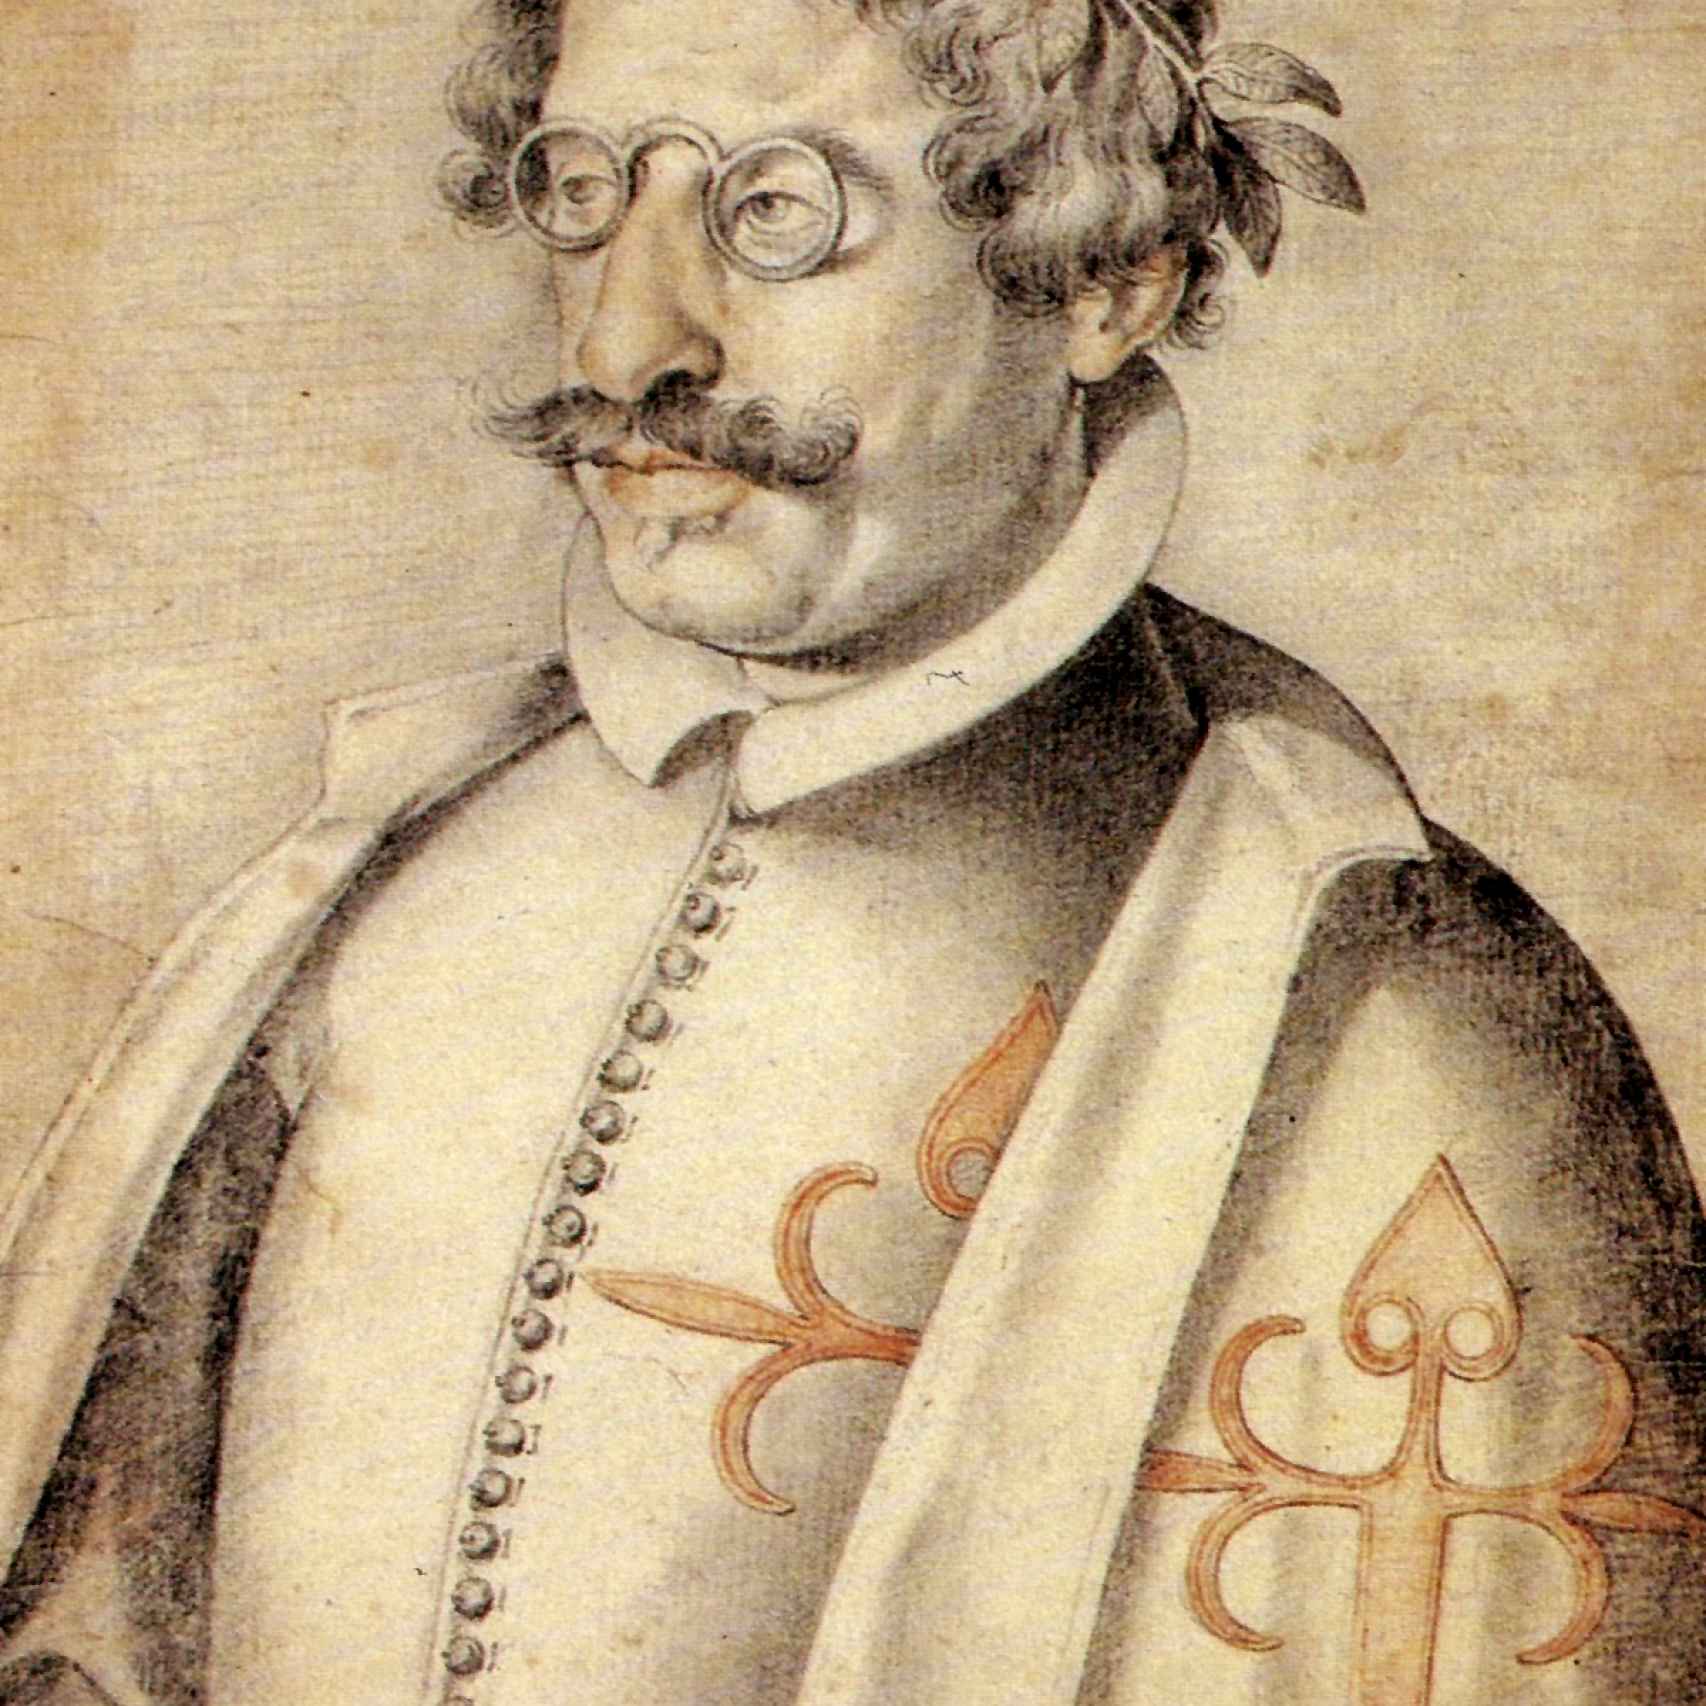 Francisco de Quevedo retratado por Francisco Pacheco.